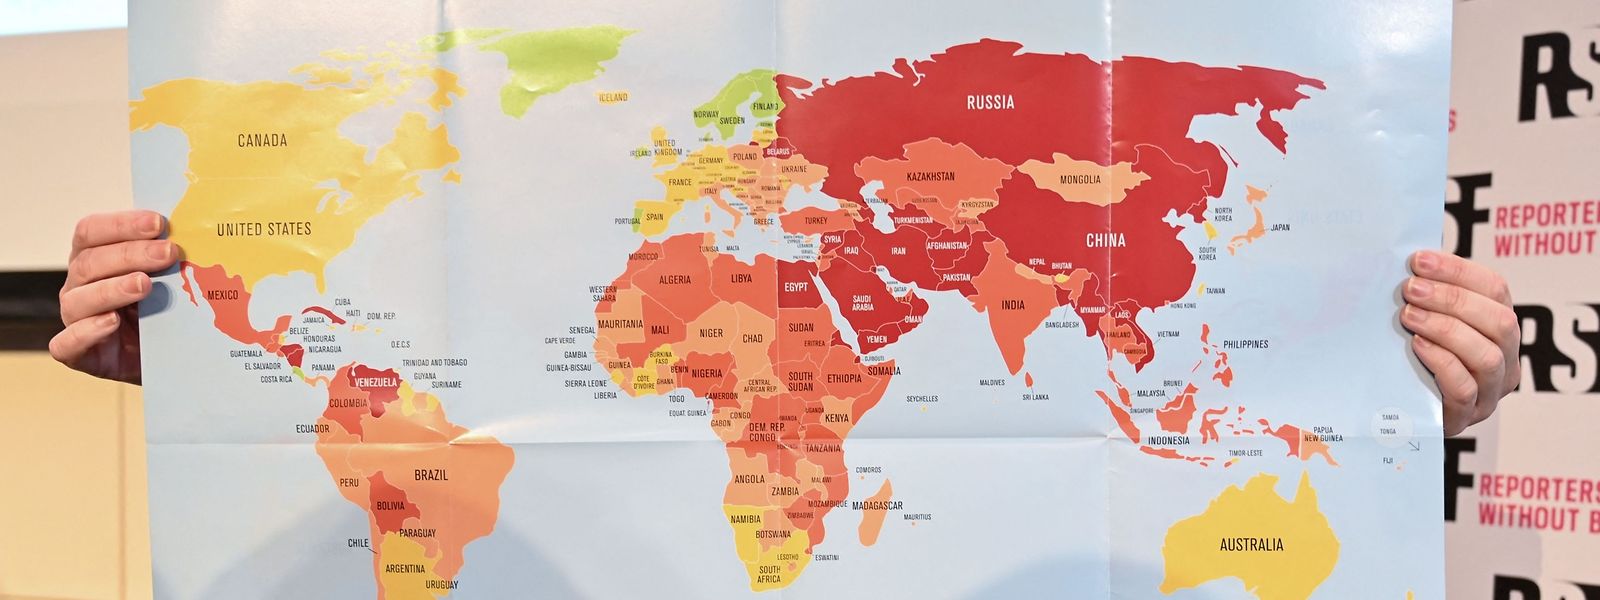 Voici la nouvelle carte du classement mondial de la liberté de la presse 2022 établie par Reporters sans frontières.